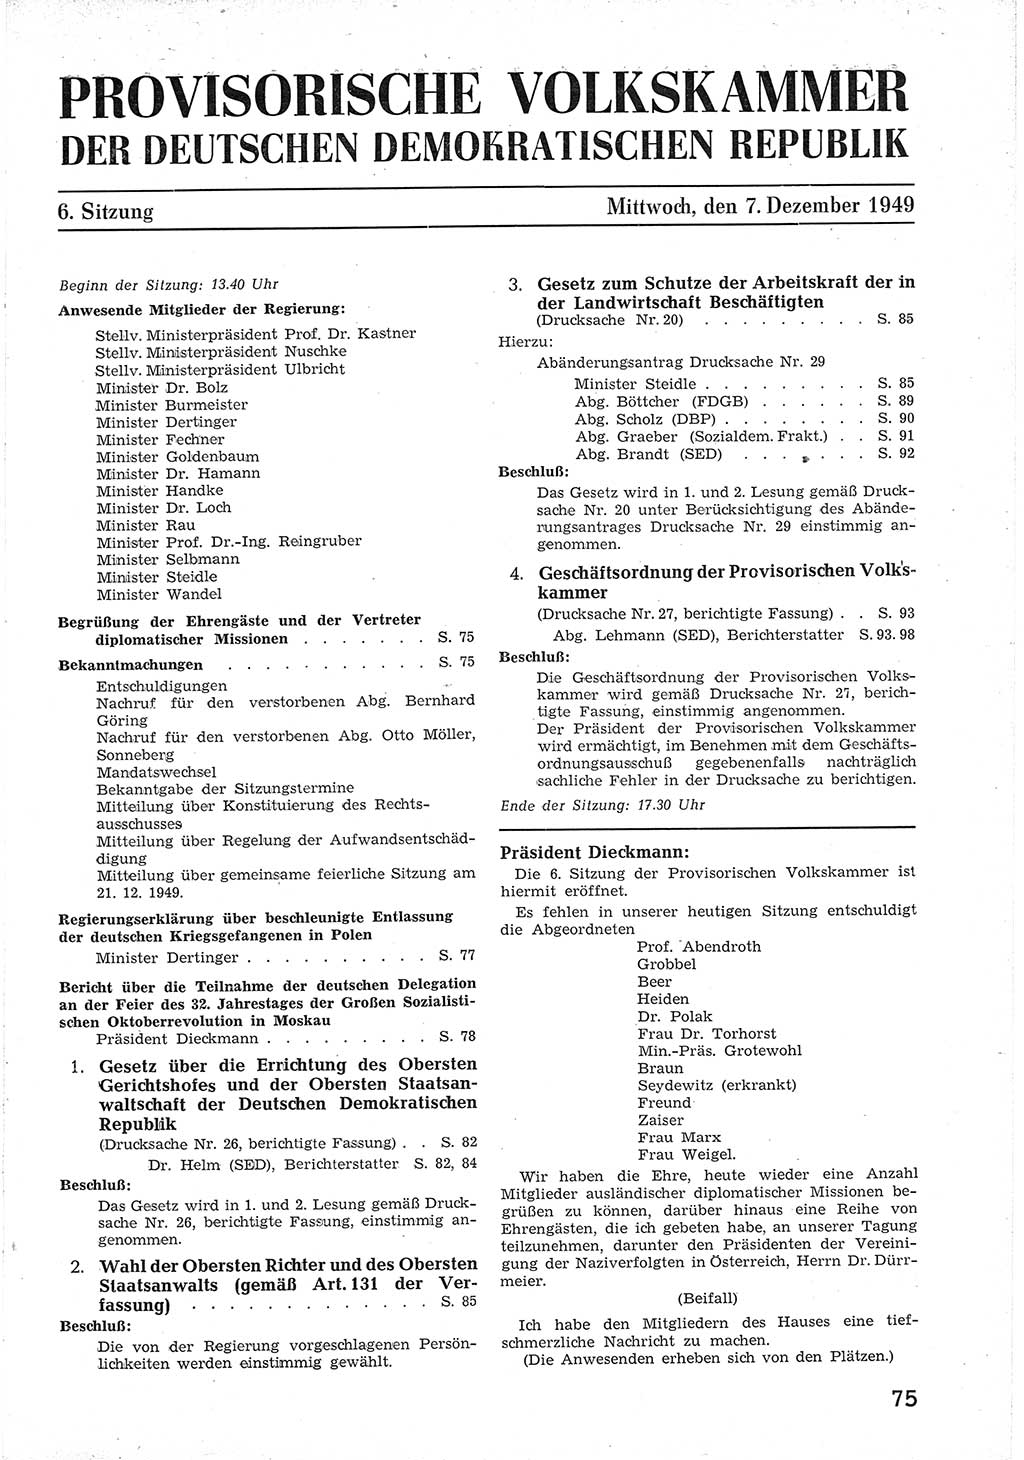 Provisorische Volkskammer (VK) der Deutschen Demokratischen Republik (DDR) 1949-1950, Dokument 87 (Prov. VK DDR 1949-1950, Dok. 87)